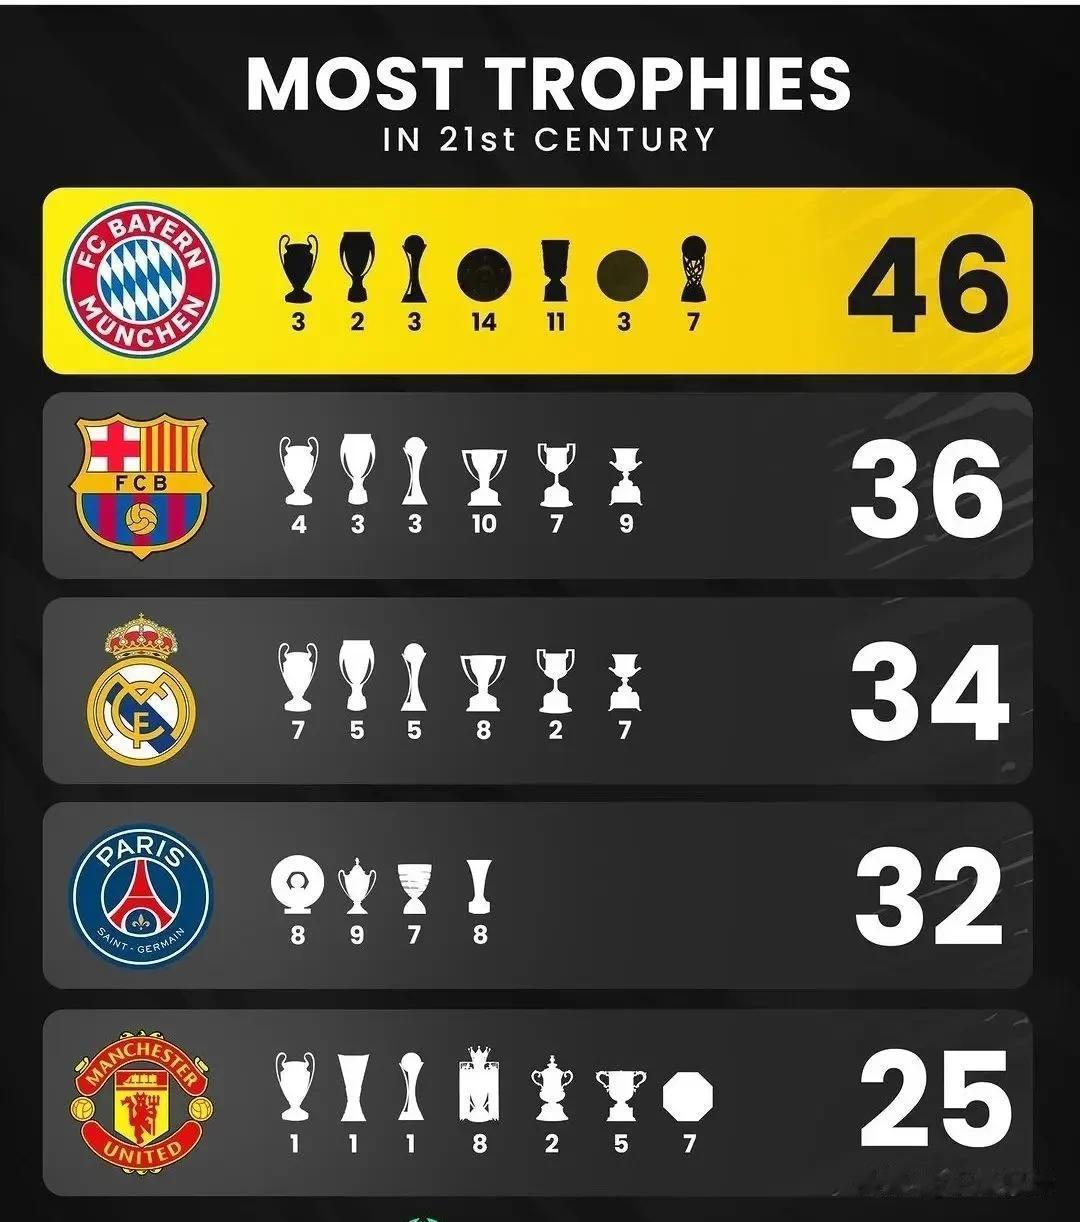 21世纪五大联赛中获得冠军奖杯最多的俱乐部：
拜仁慕尼黑：46座(含14座德甲冠